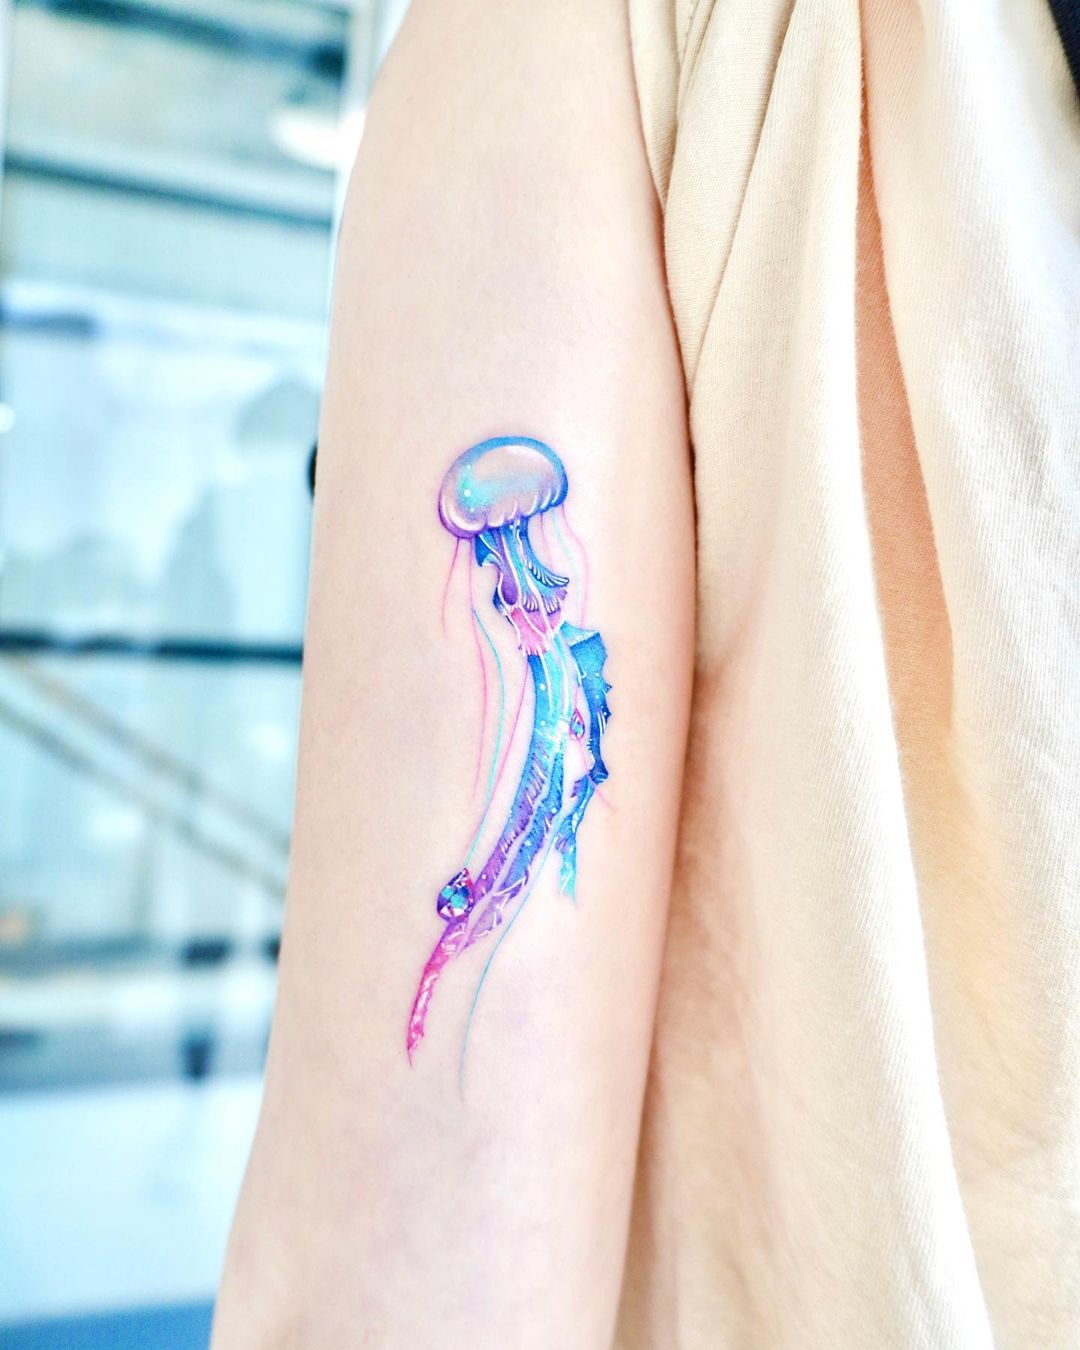 Izzet Abatlevi Tattoos  Watercolor Jellyfish   Taksim  DM   tattoo tattoos tatted tattooartist inked inkedup tattooart inkedmag  inkjunkeyz inklife instatattoo bodyart TTTpublishing  tattooartworldwide teamforklift 